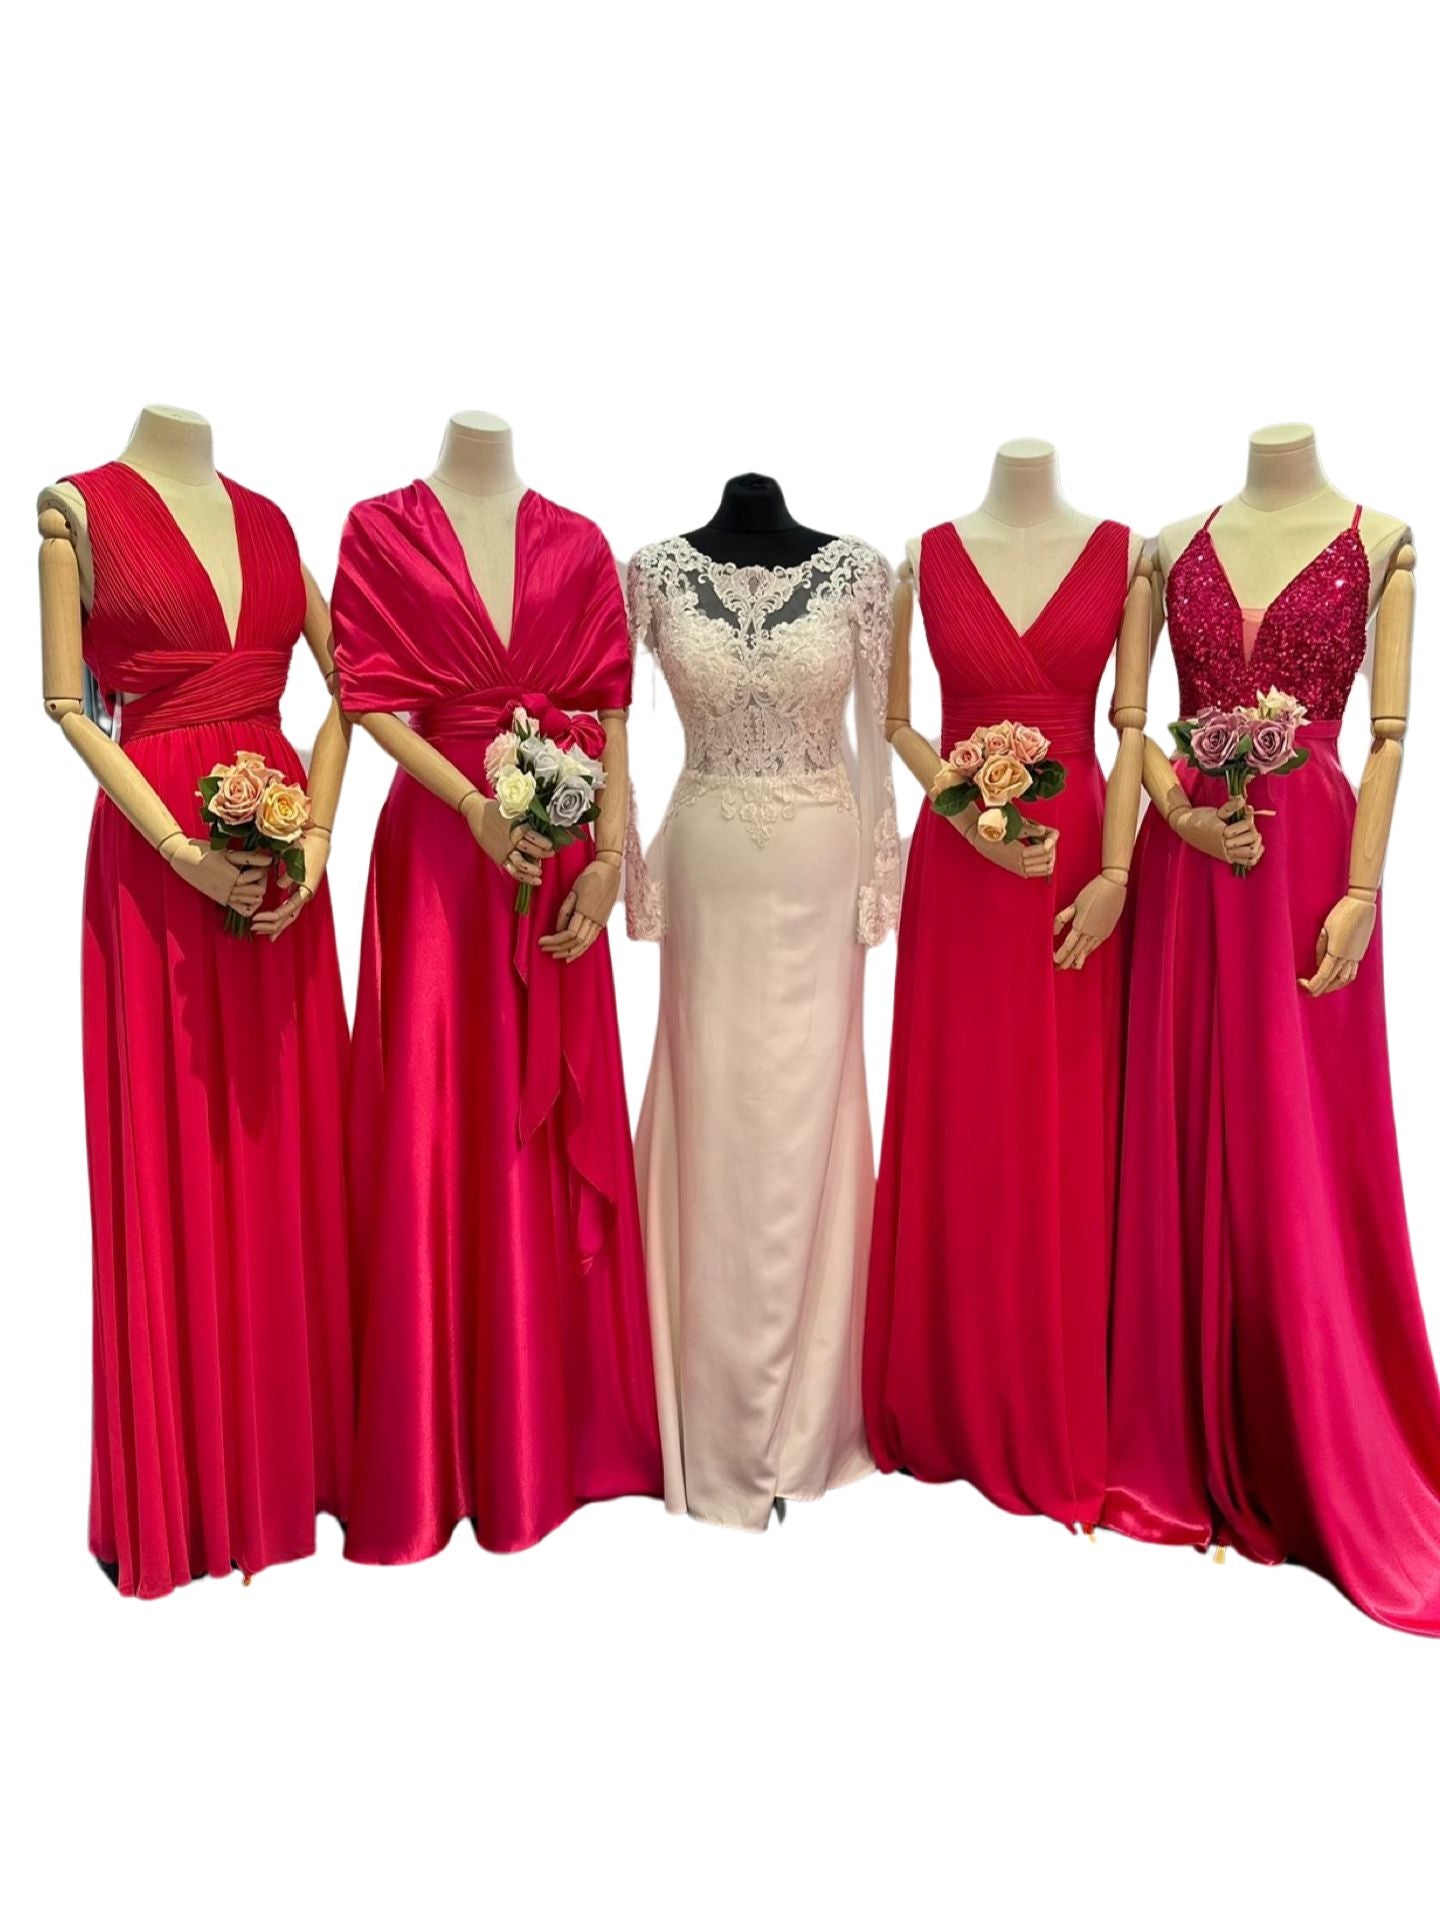 Bridesmaid dresses in fuchsia